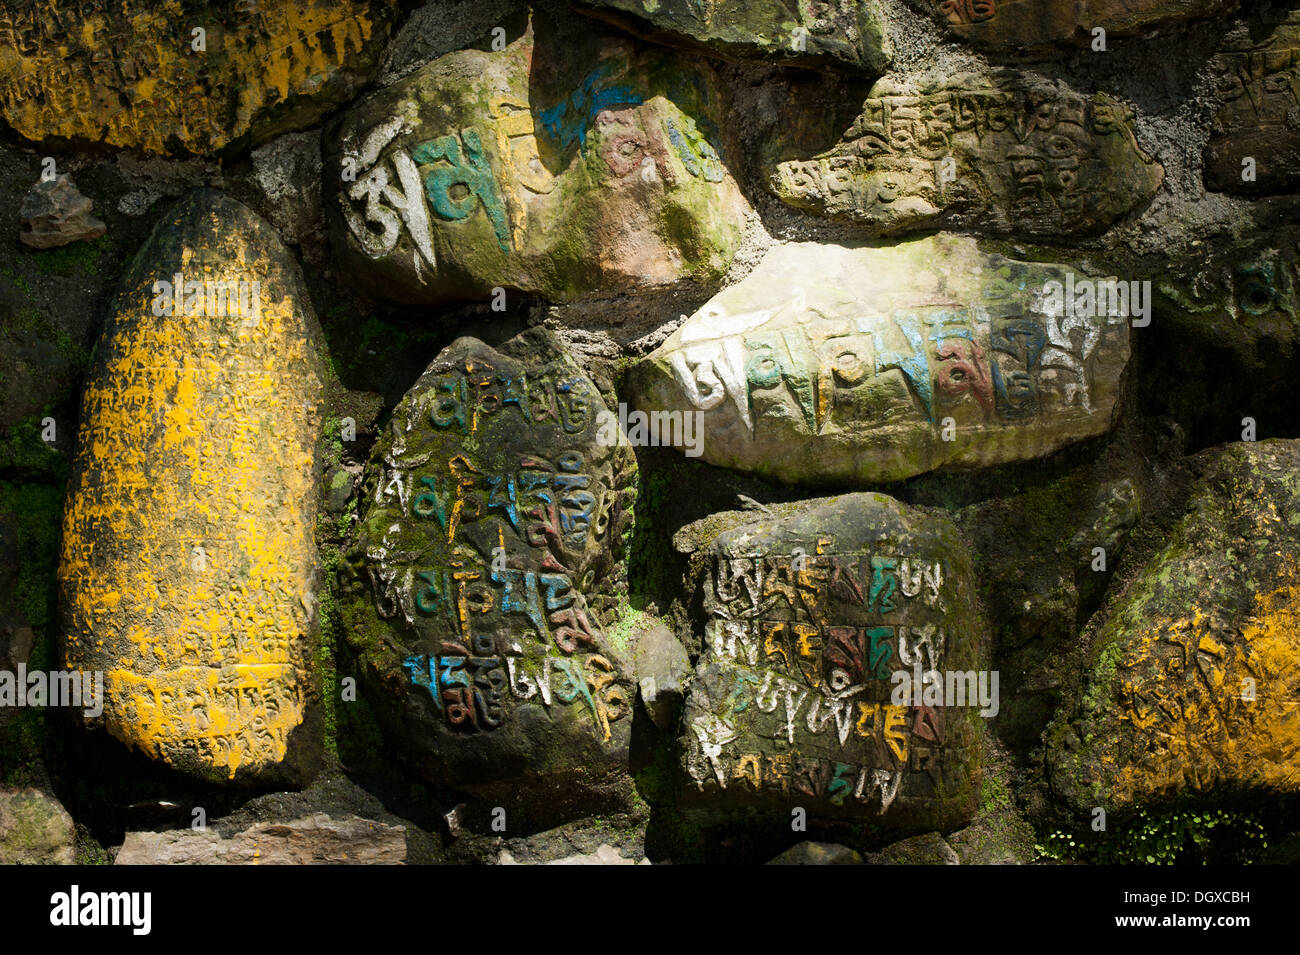 Prière bouddhistes antiques pierres avec mantra écrite Banque D'Images